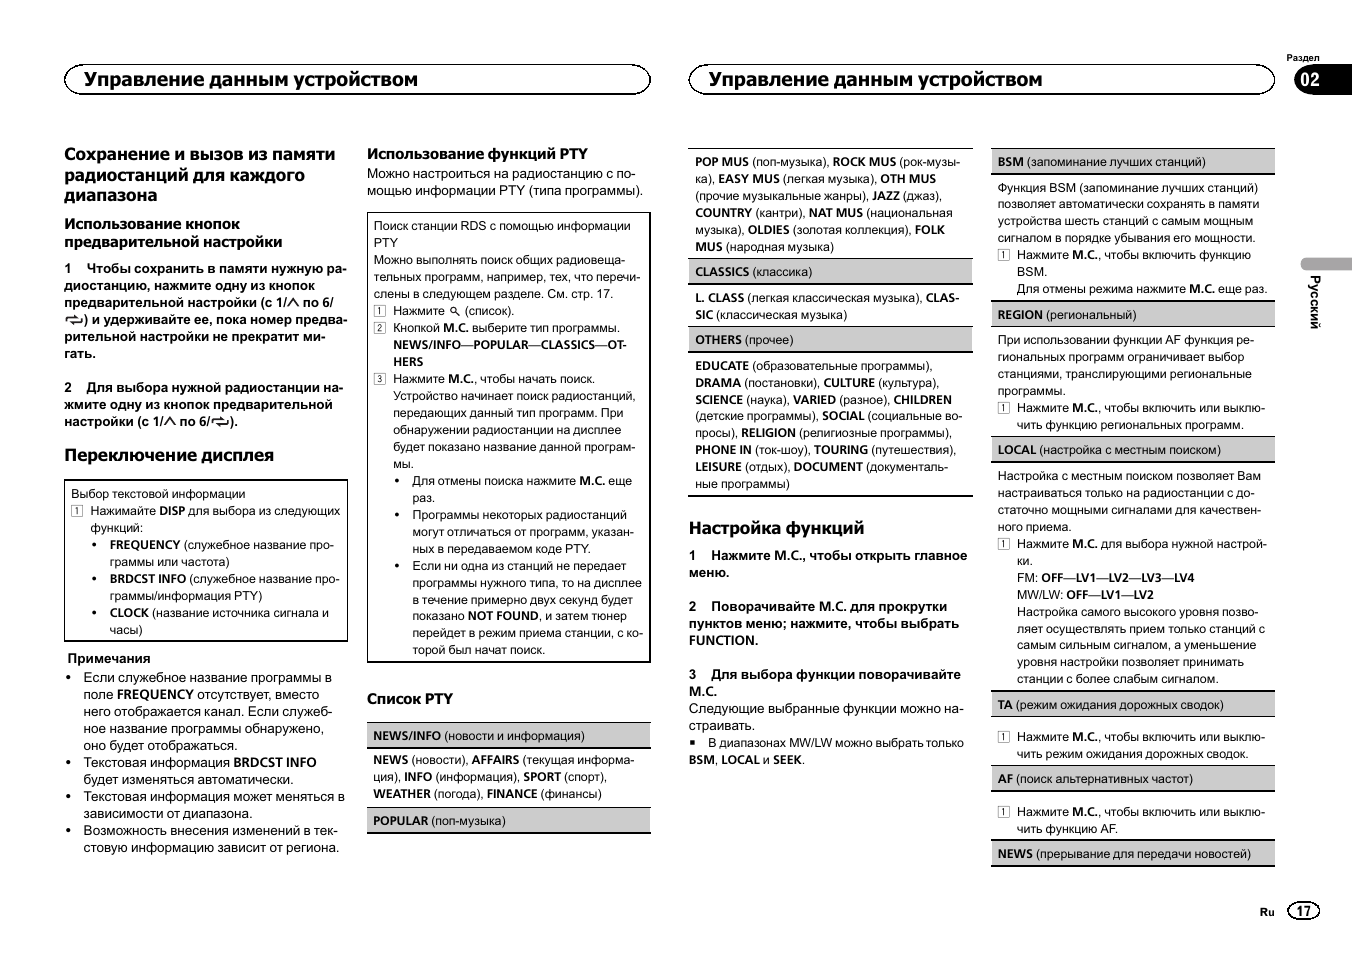 Автомагнитола пионер mvh 150ubg инструкция на русском языке